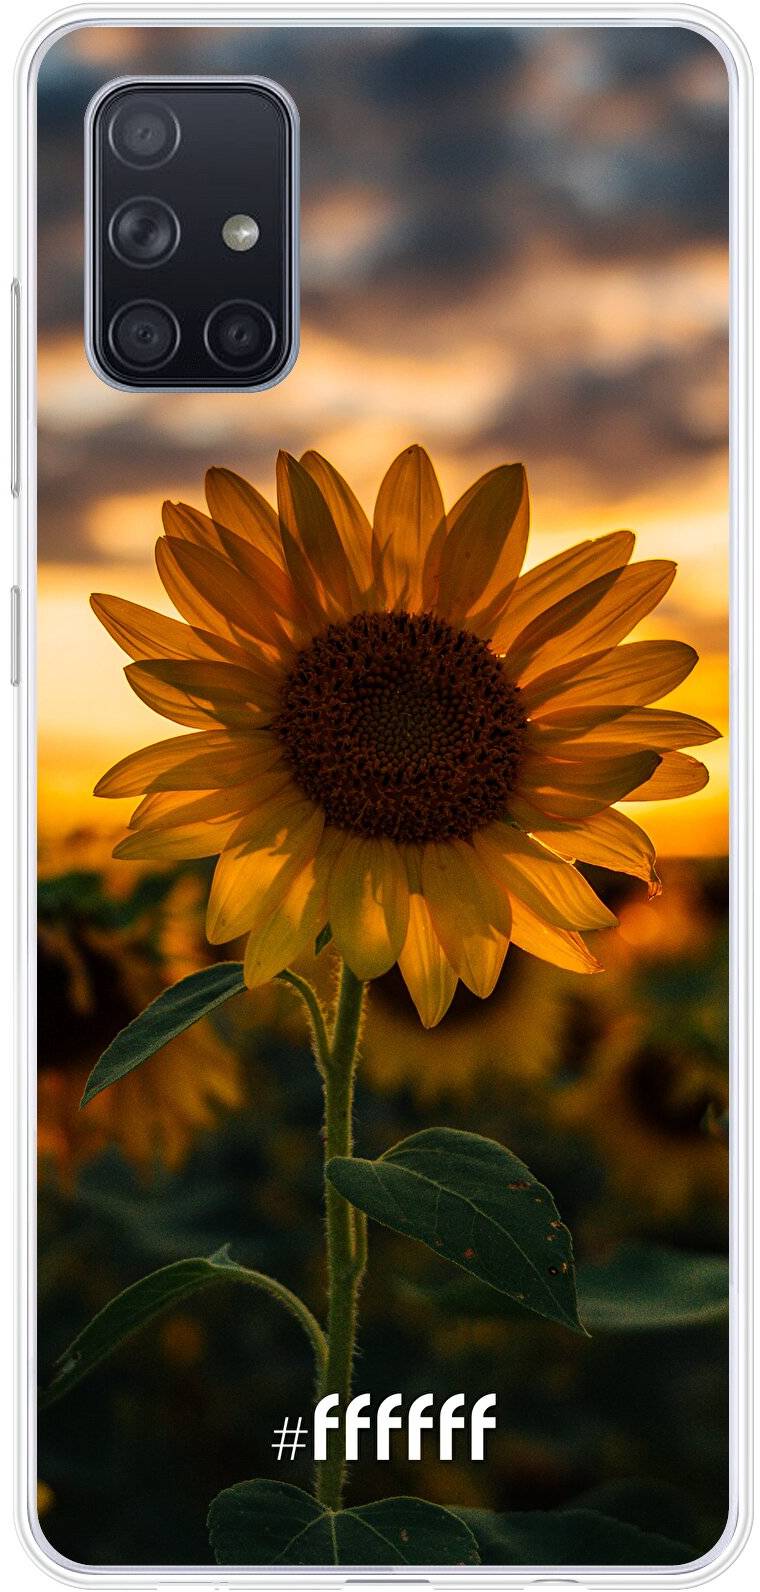 Sunset Sunflower Galaxy A71